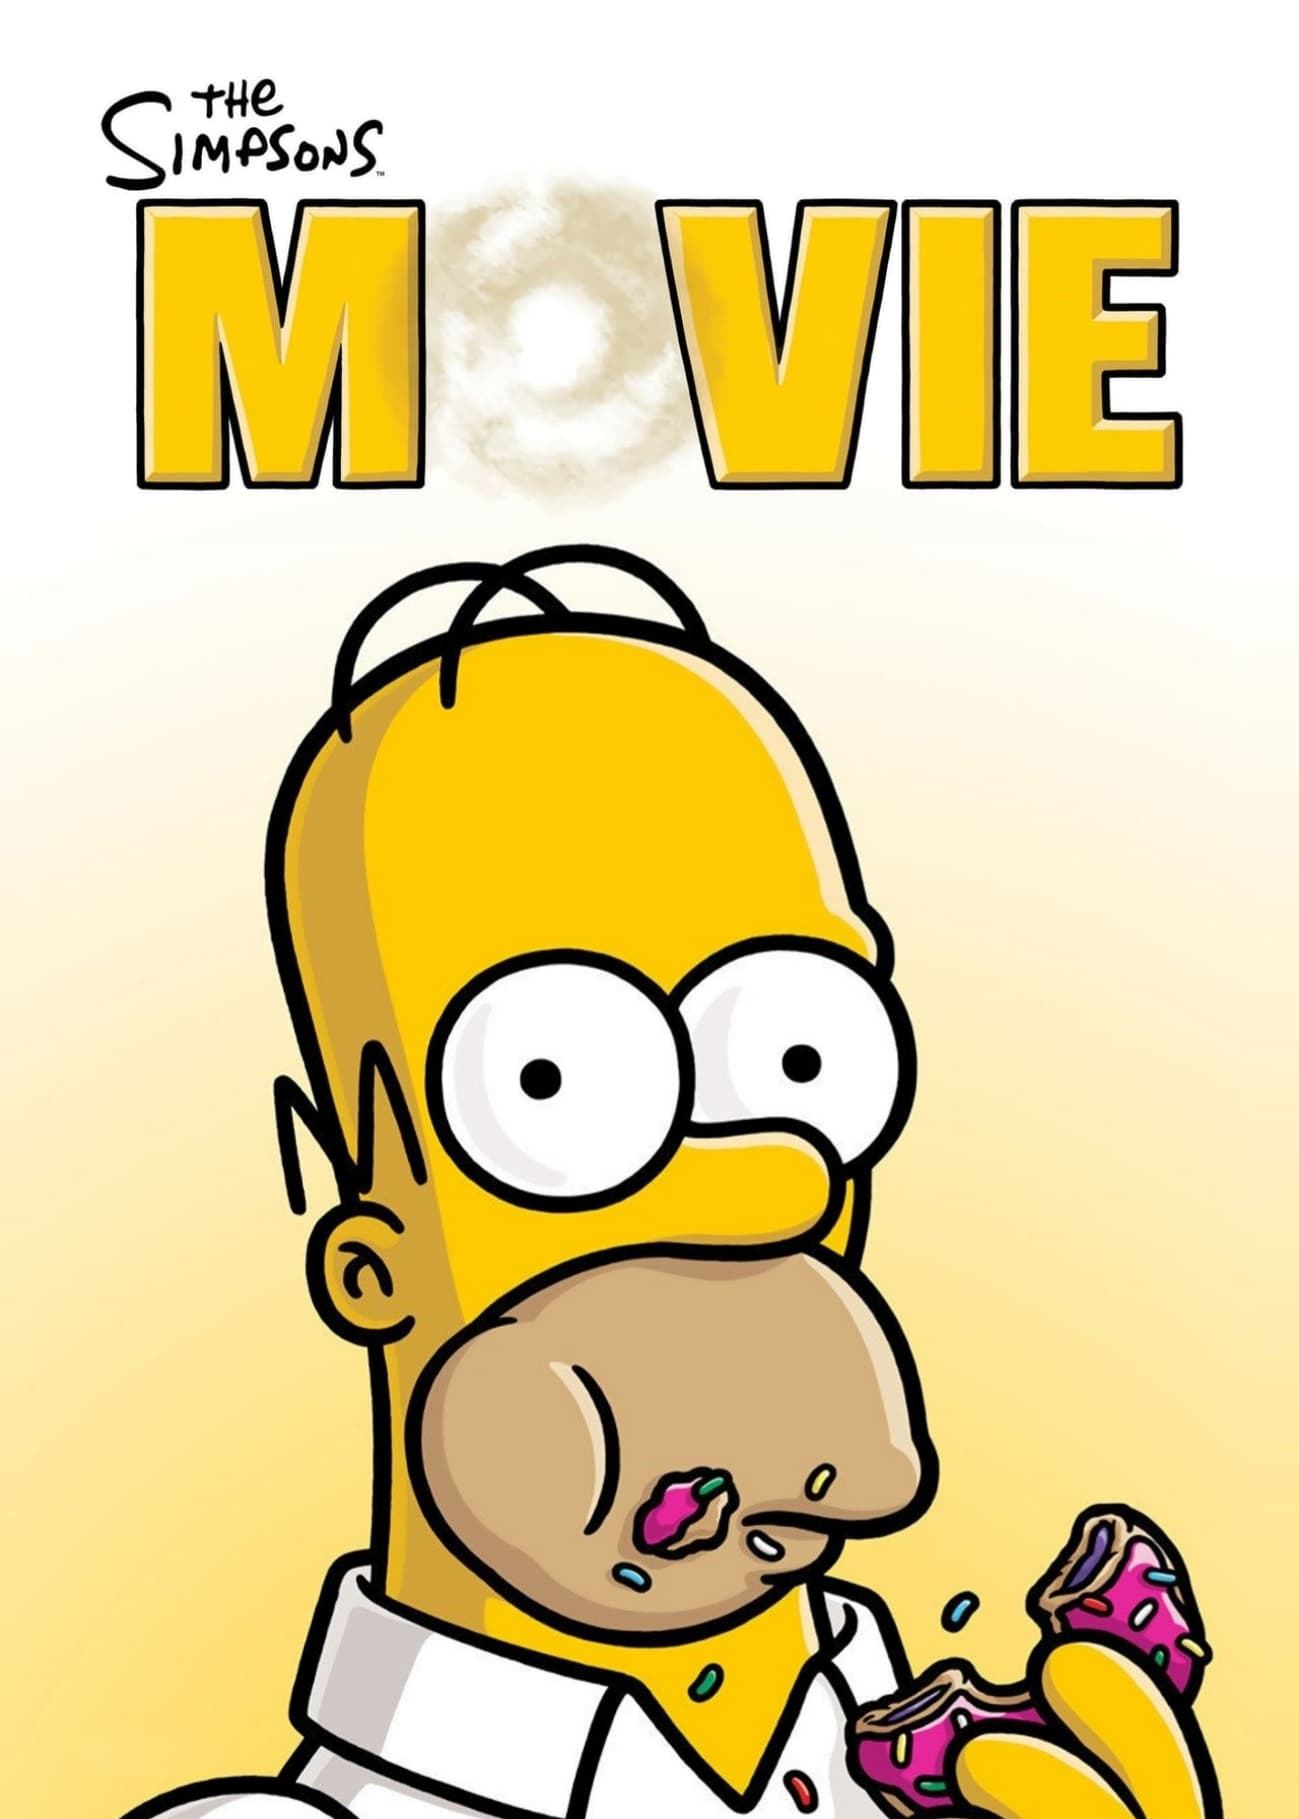 The Simpsons Movie - The Simpsons Movie